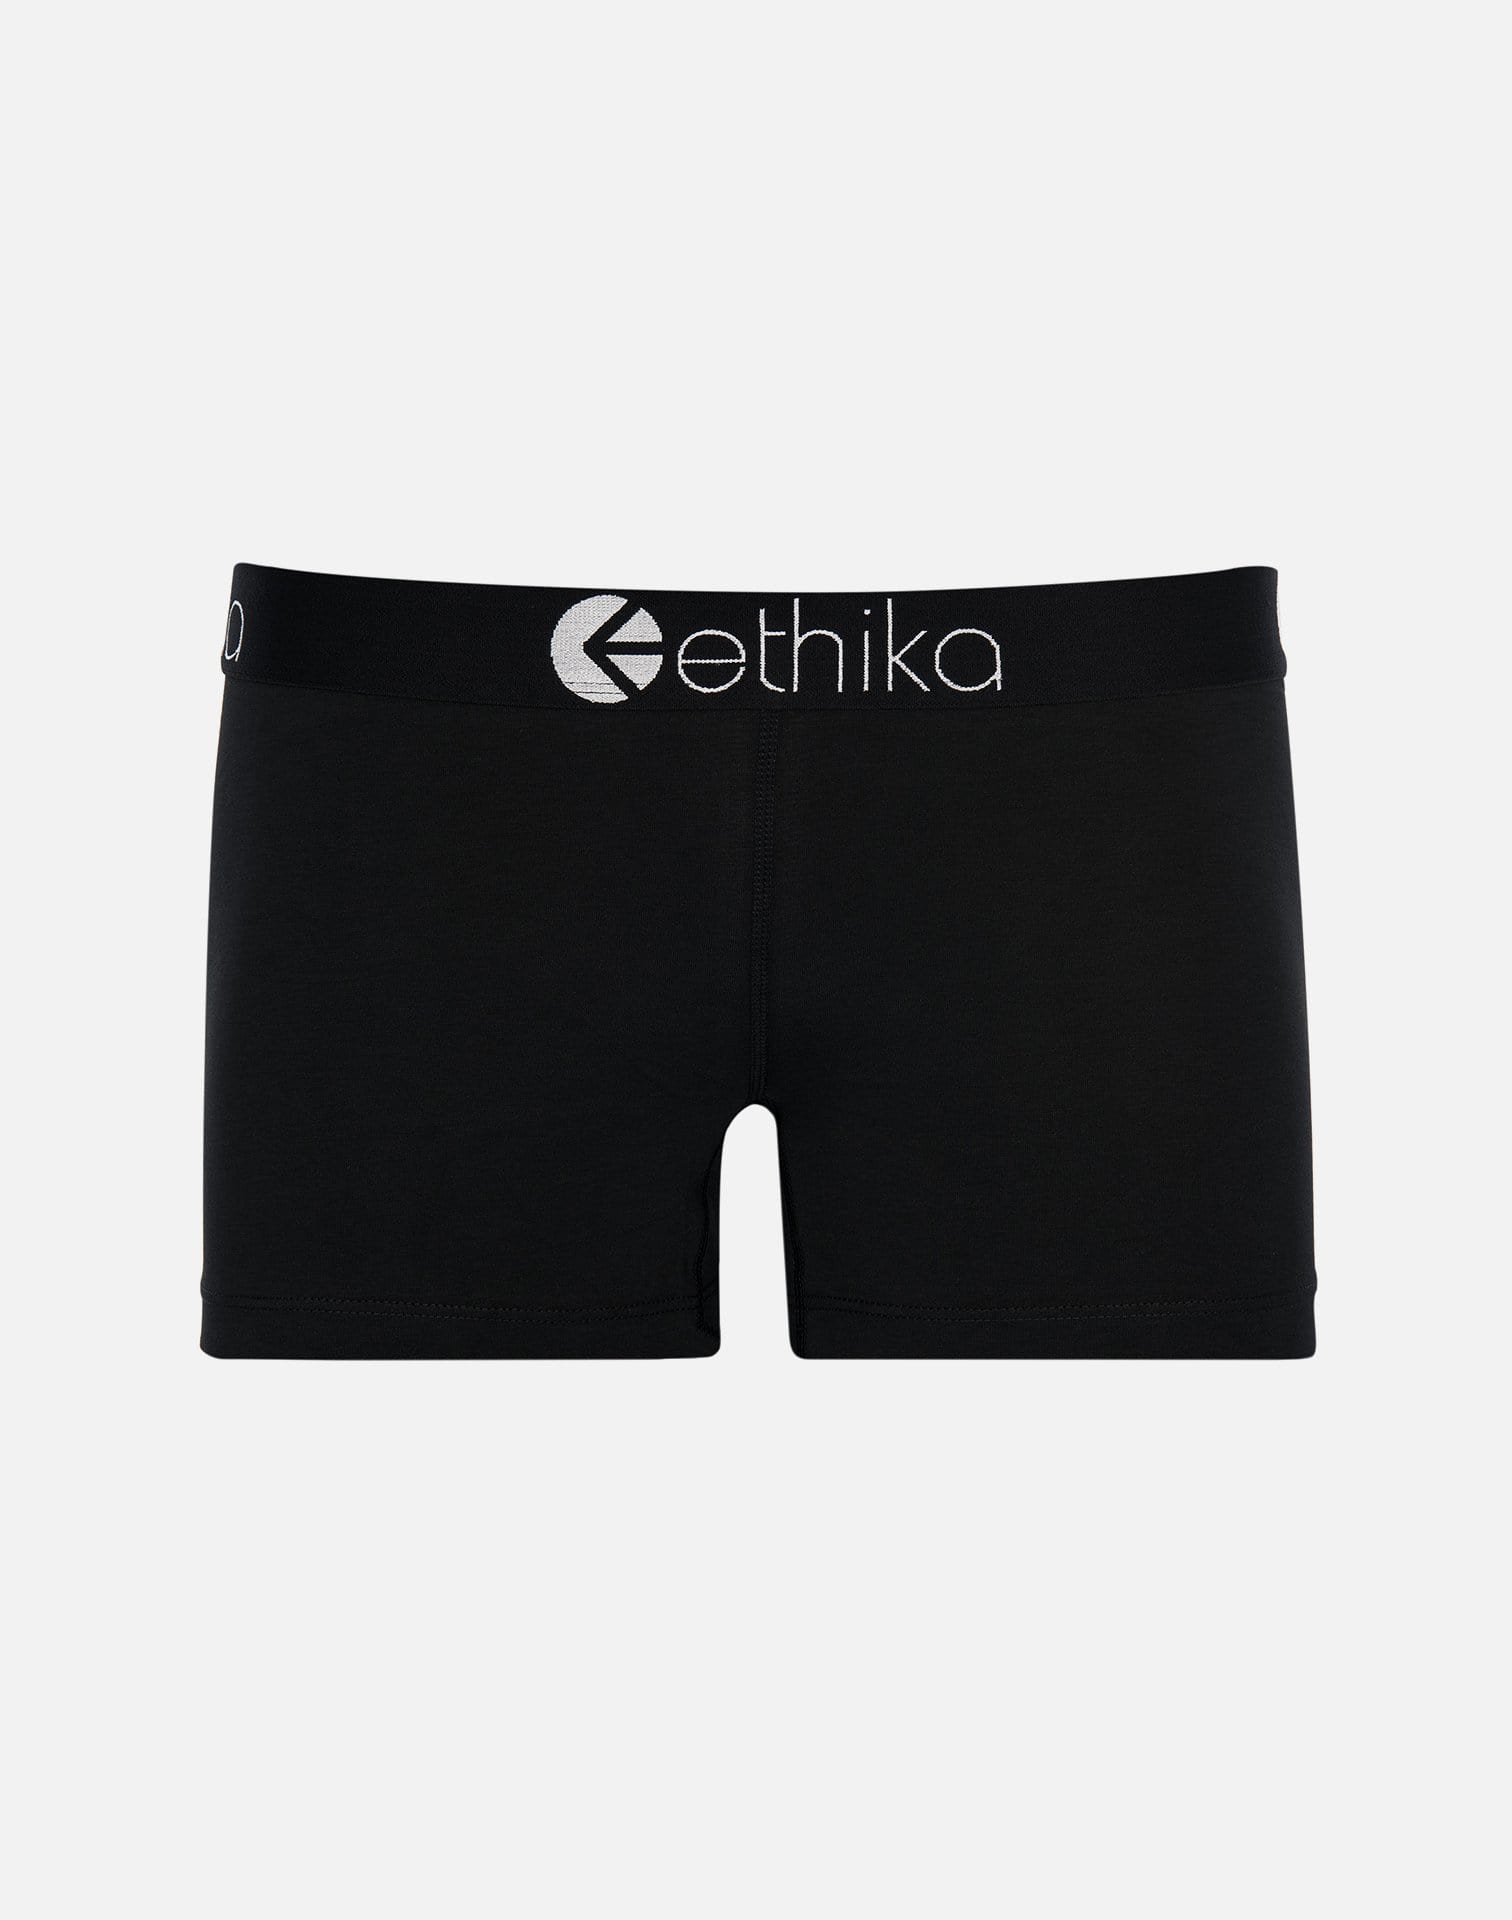 Ethika Women's Boy Shorts